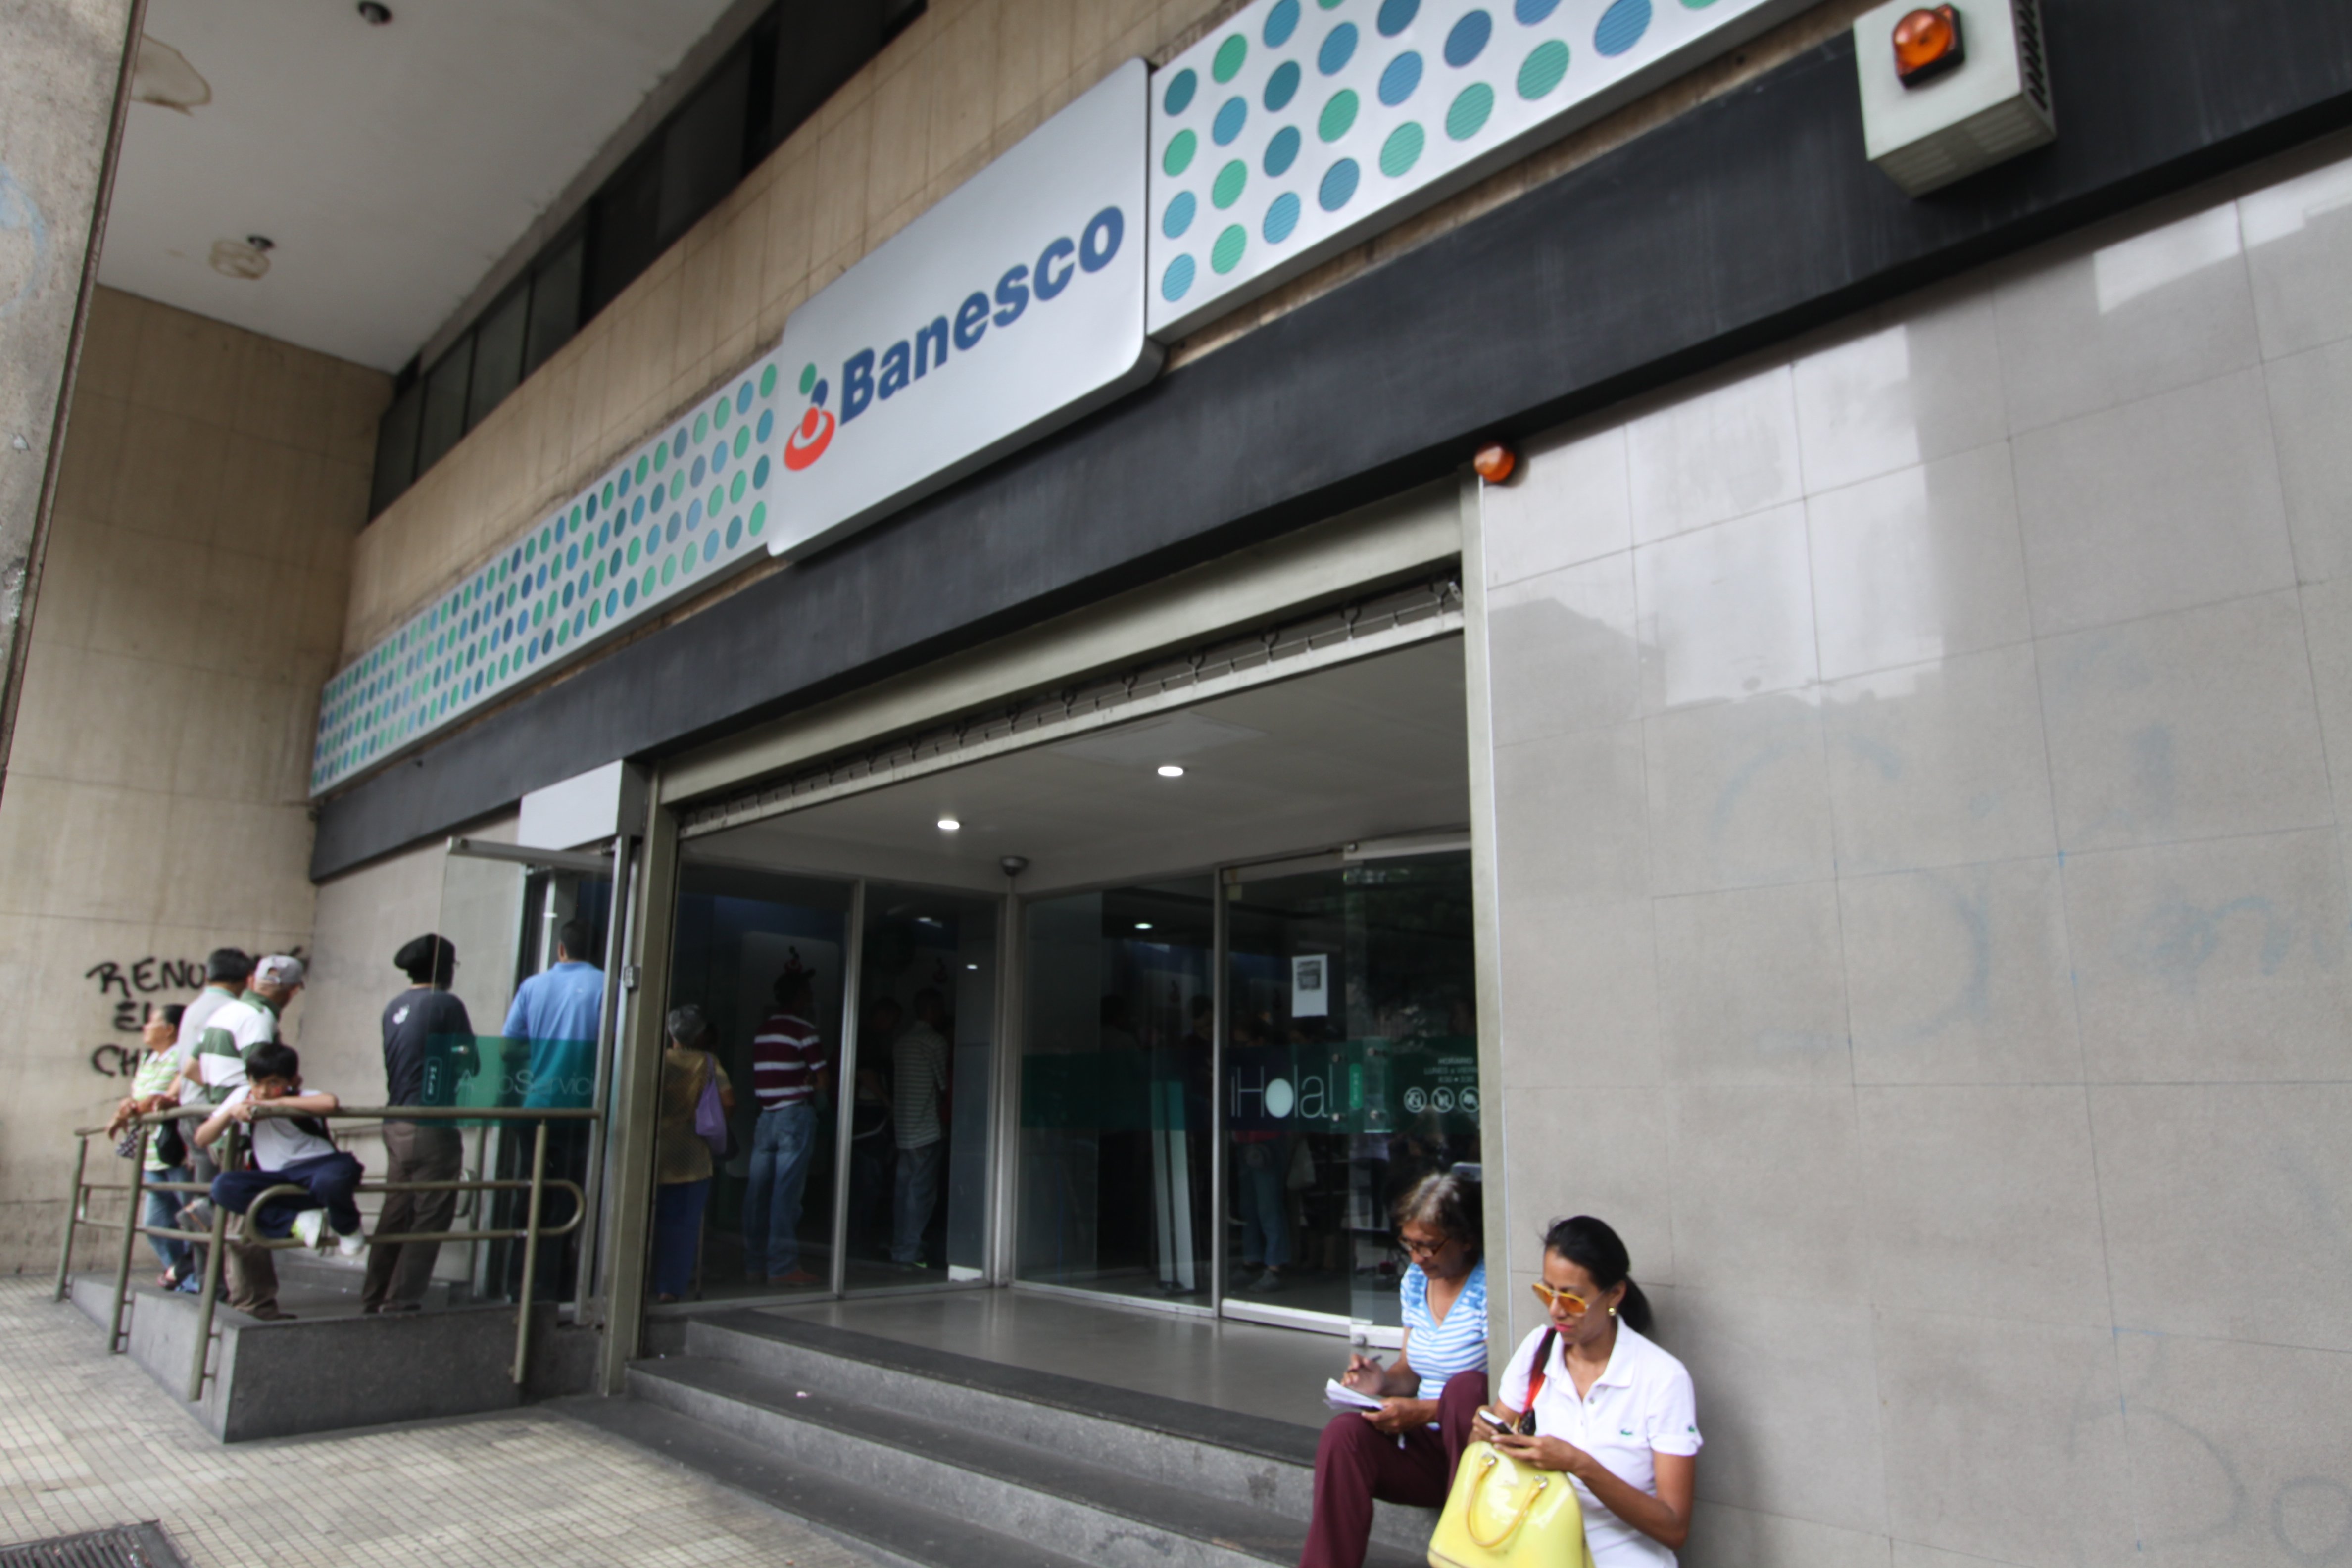 Agencias de Banesco funcionan con toda normalidad en Venezuela